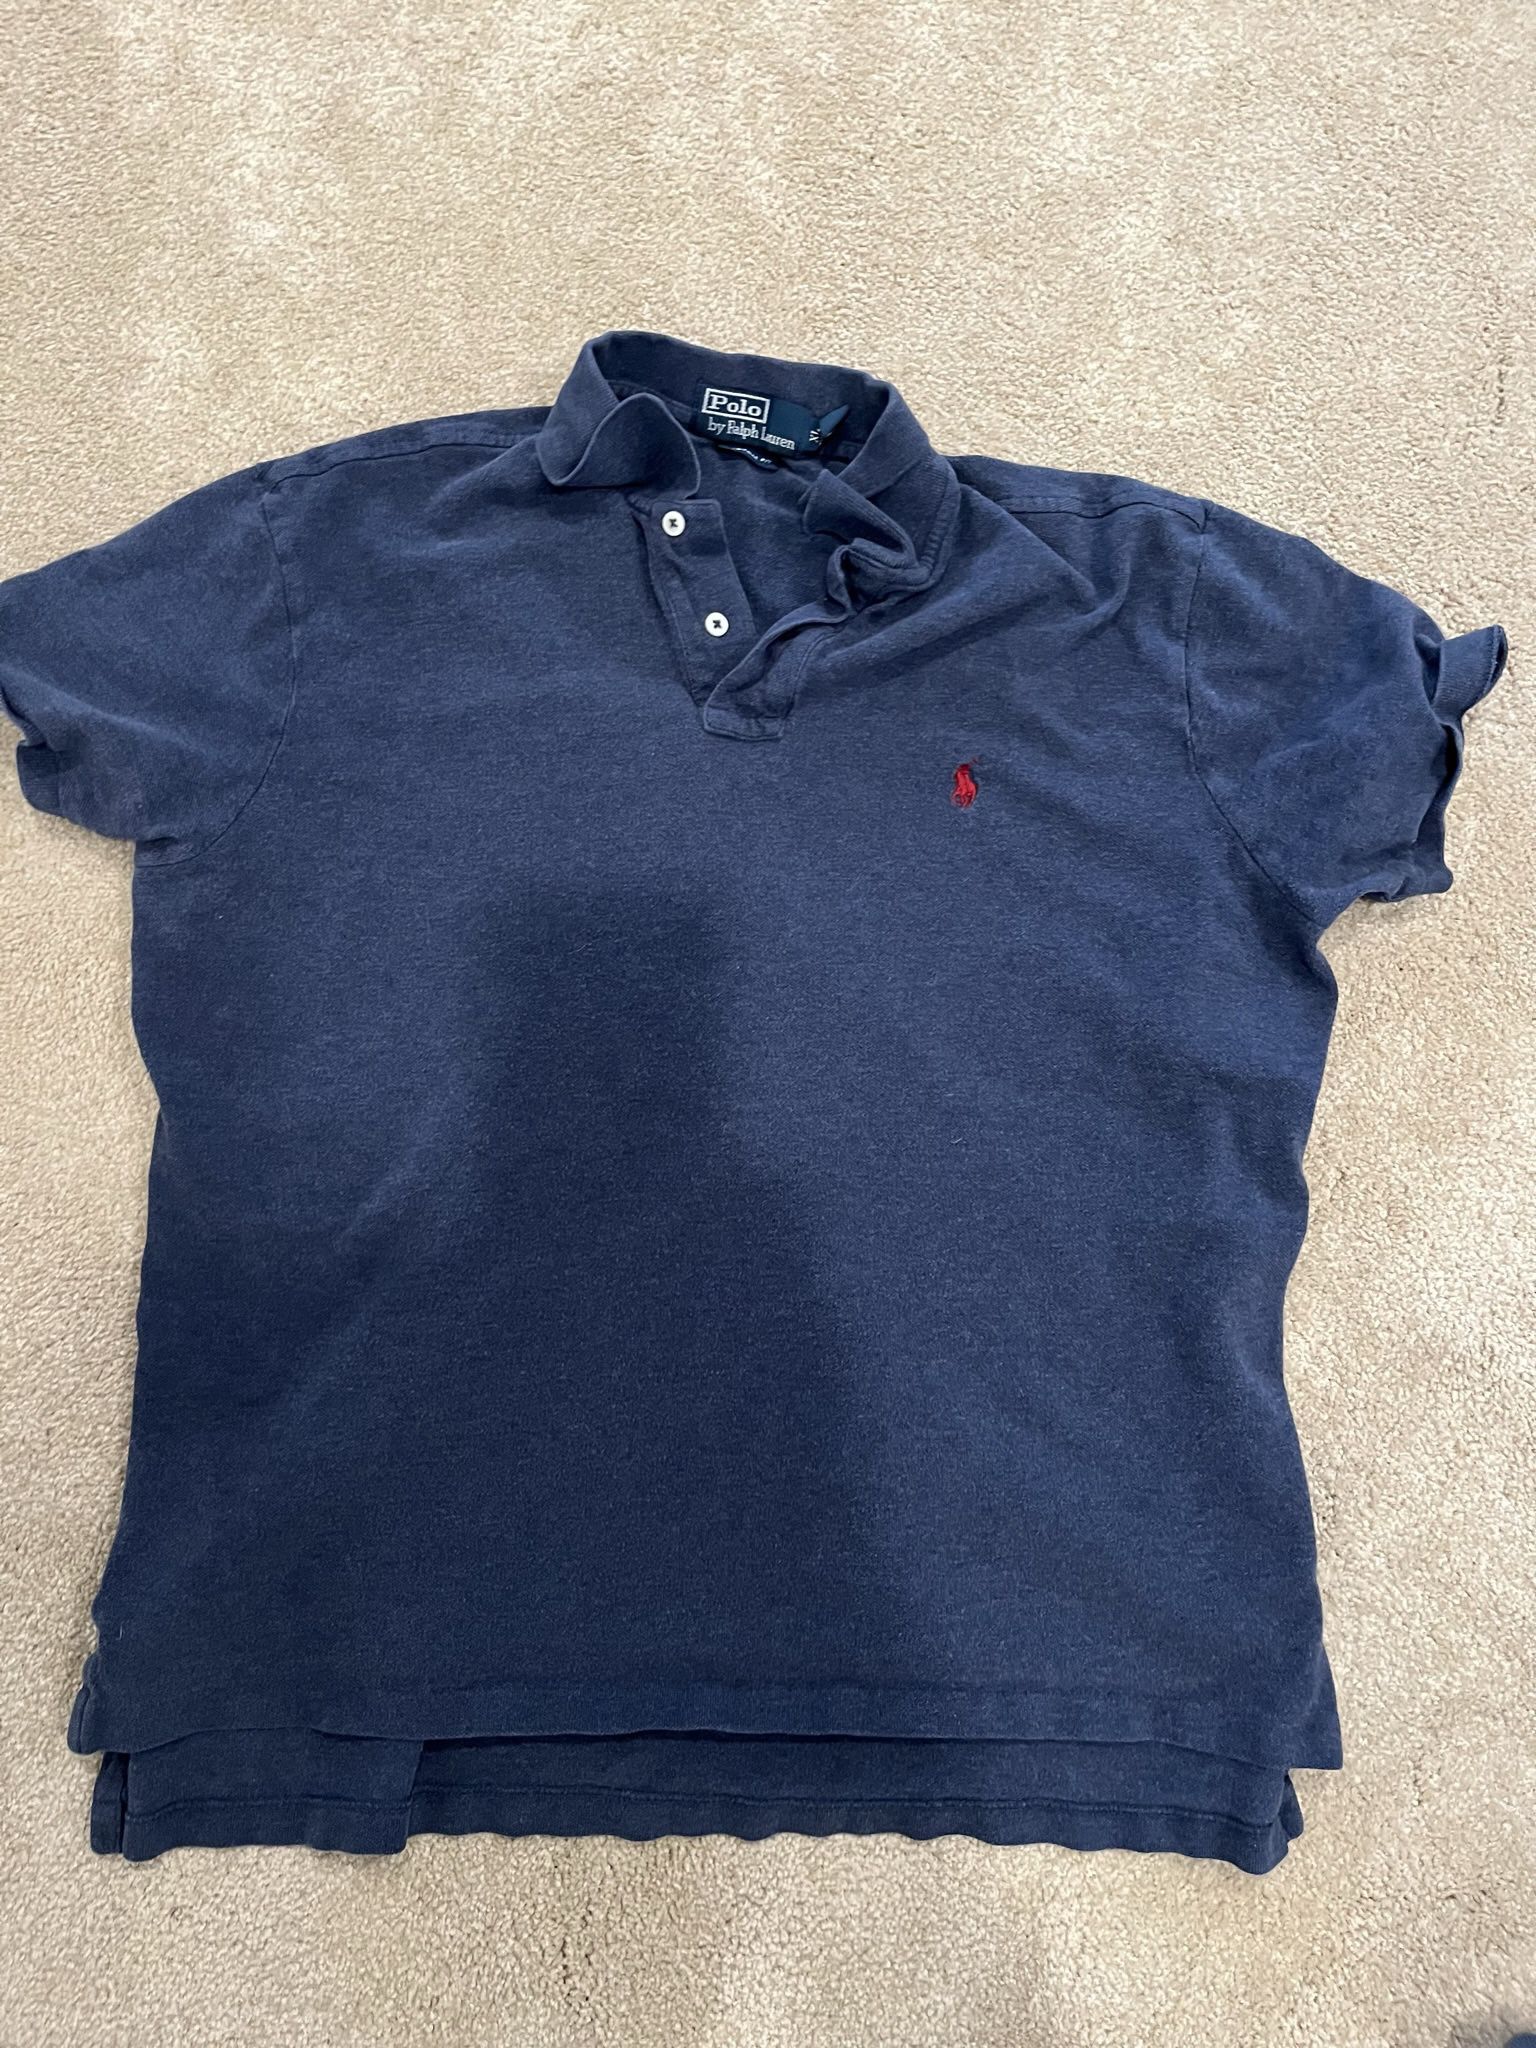 Polo Ralph Lauren XL Blue Short Sleeve Shirt 